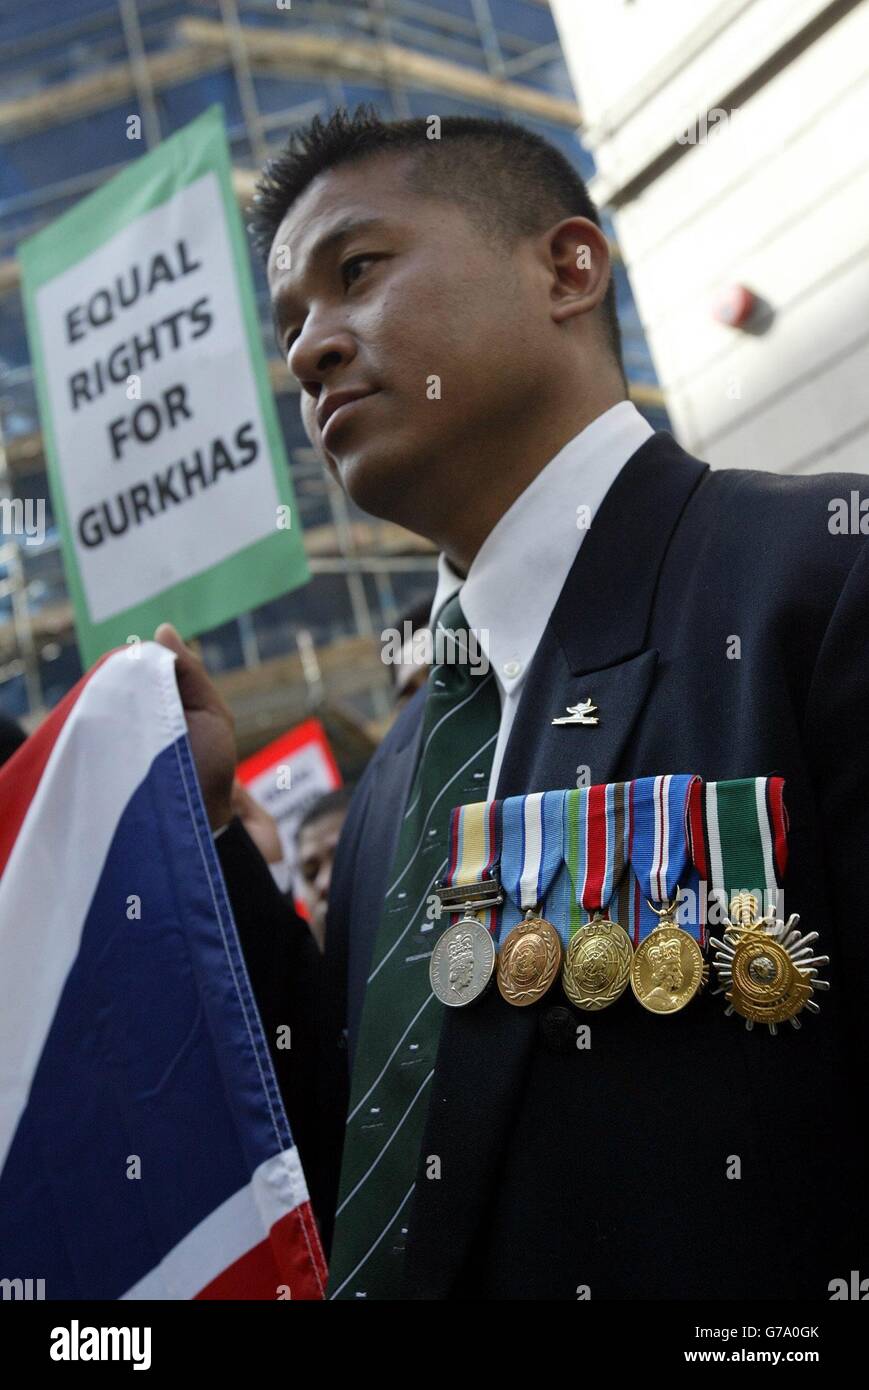 Eine Gruppe von 400 pensionierten Gurkha-Soldaten wird heute in einem Protest fordern, britische Staatsbürger zu werden. Die in Nepal geborenen Männer, die alle 15 bis 30 Jahre im Elite-Regiment dienten, glauben, dass das Innenministerium zu lange dauert, um zu entscheiden, ob sie sich in Großbritannien niederlassen dürfen. Einige warten seit mehr als zwei Jahren auf die Bearbeitung von Anträgen und sagen, dass der fehlende nationale Status sie daran hindert, bestimmte Arbeitsplätze zu bekommen und ihr Leben zu erhalten. Stockfoto